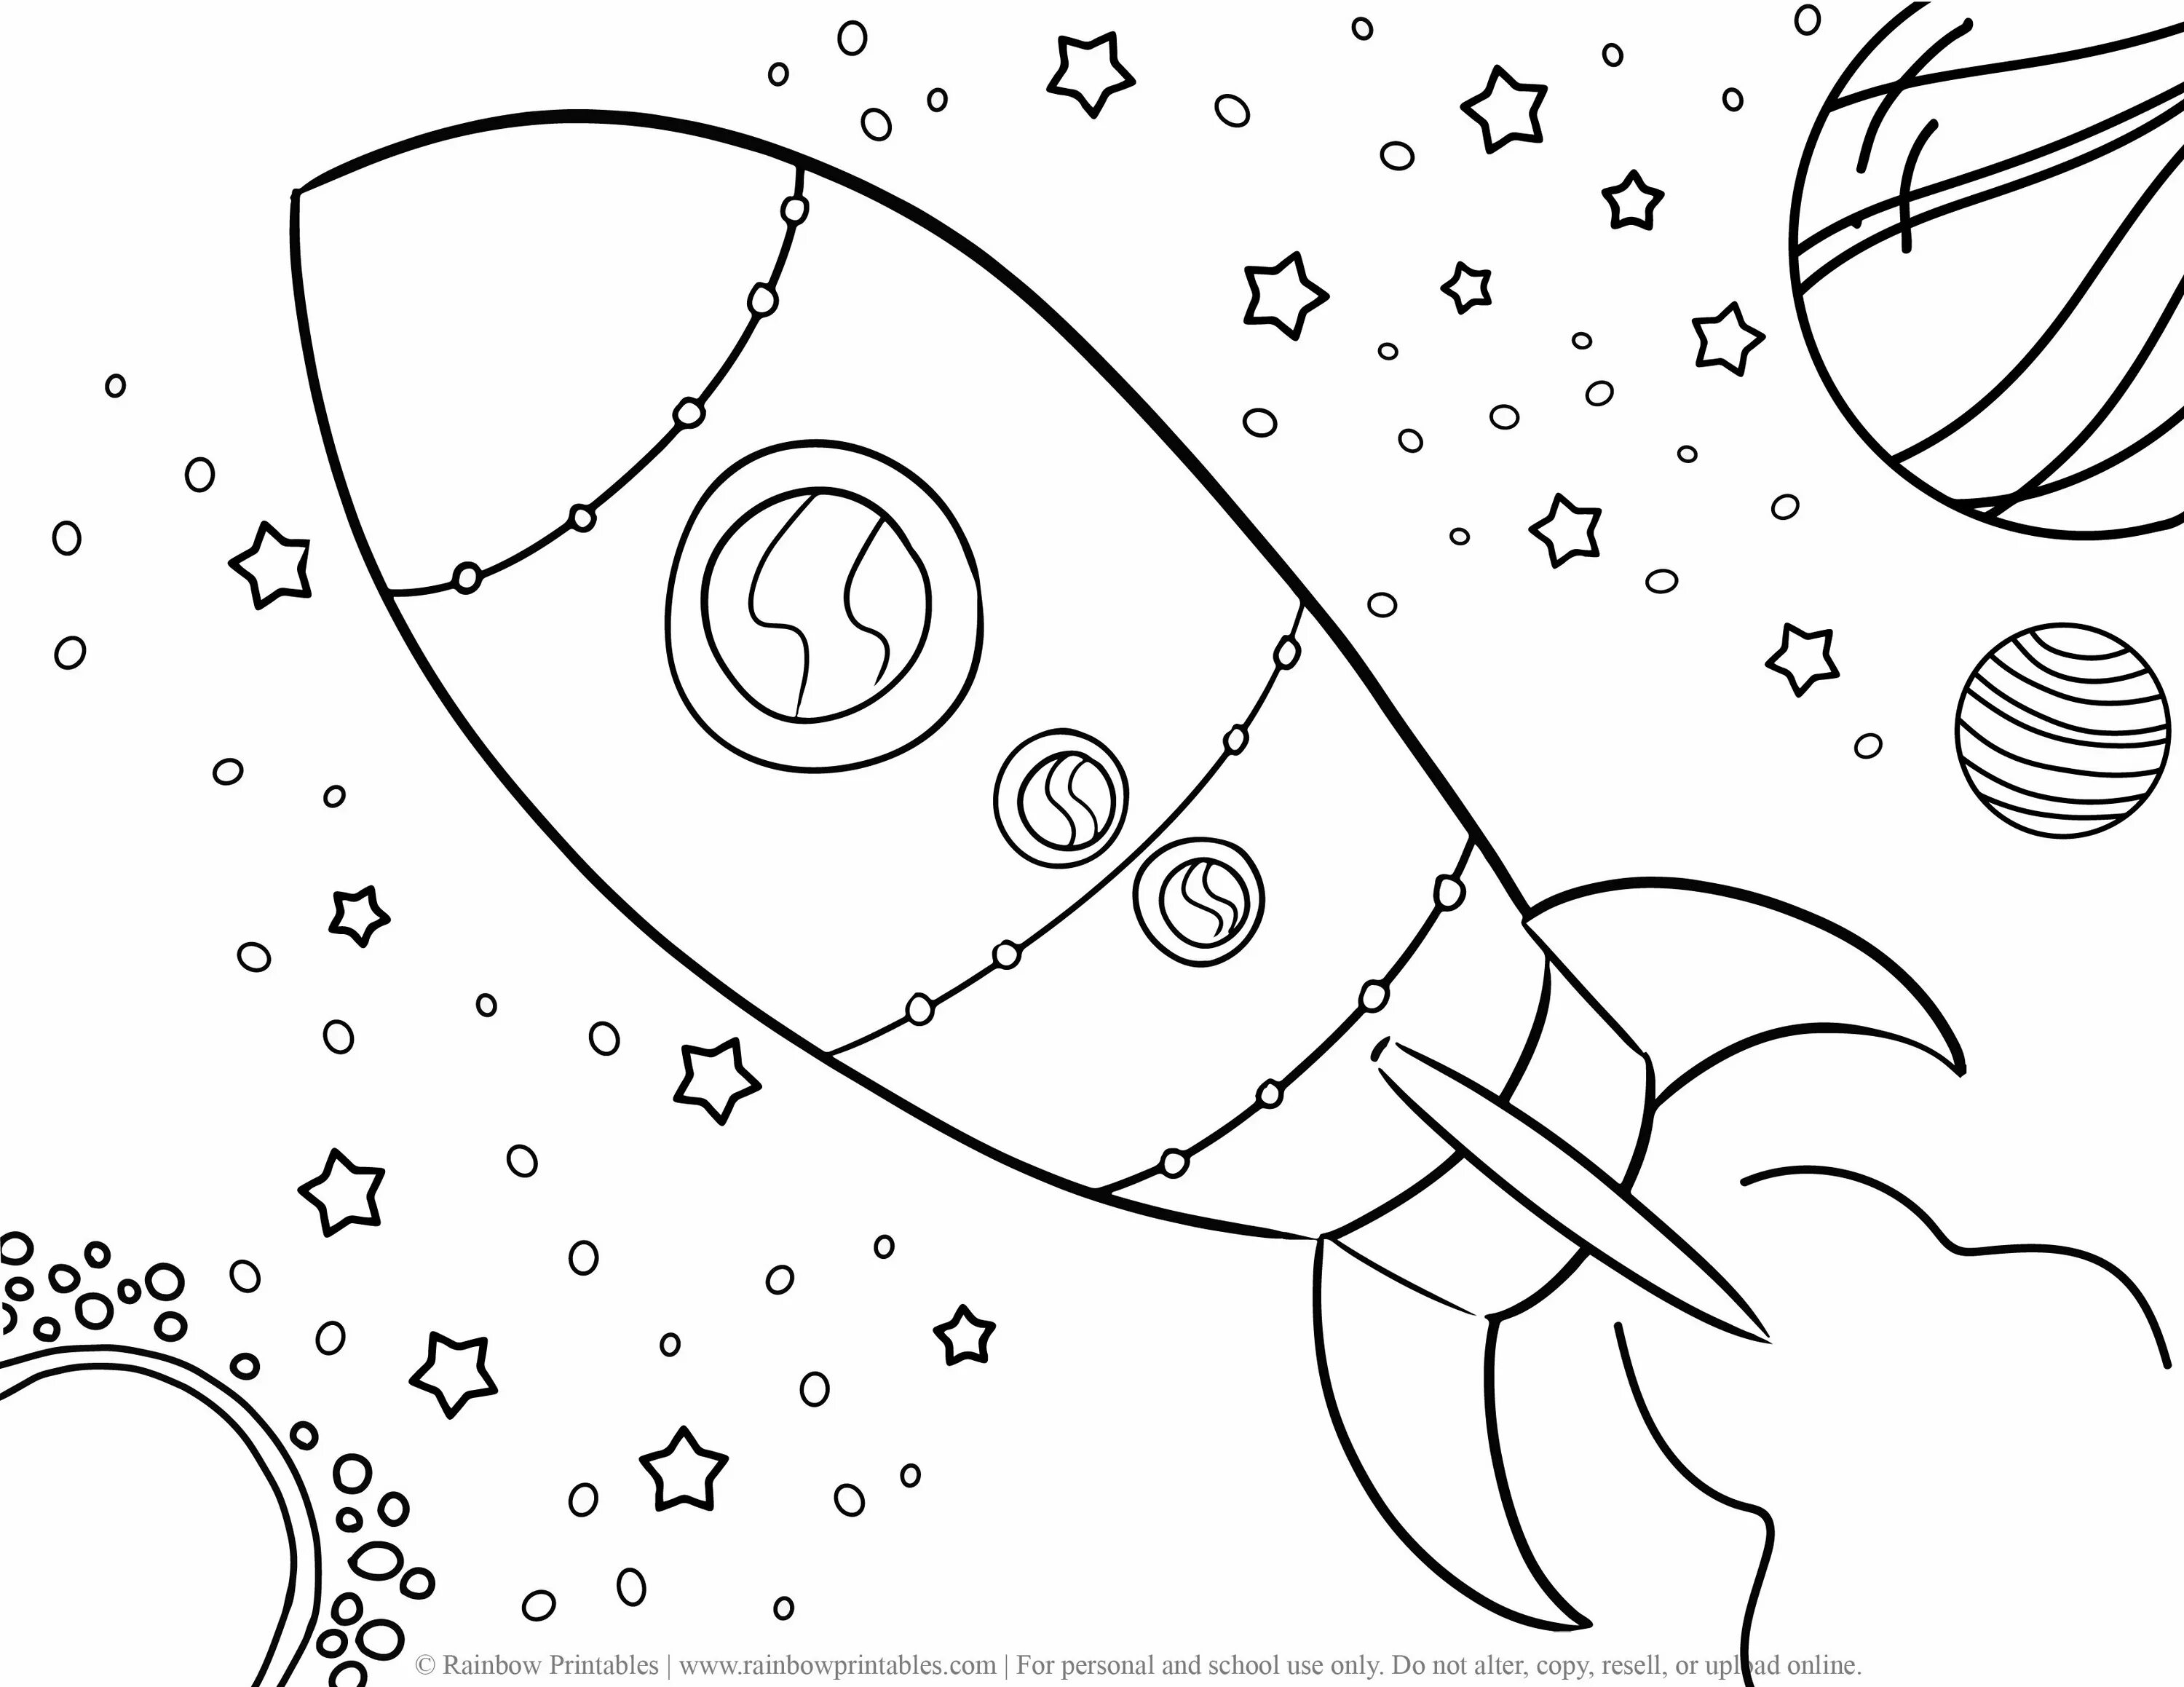 Космос раскраска для детей. Космос карандашом. Раскраска космос и планеты для детей. Раскраска для малышей. Космос. Космос рисунок легкий для срисовки карандашом